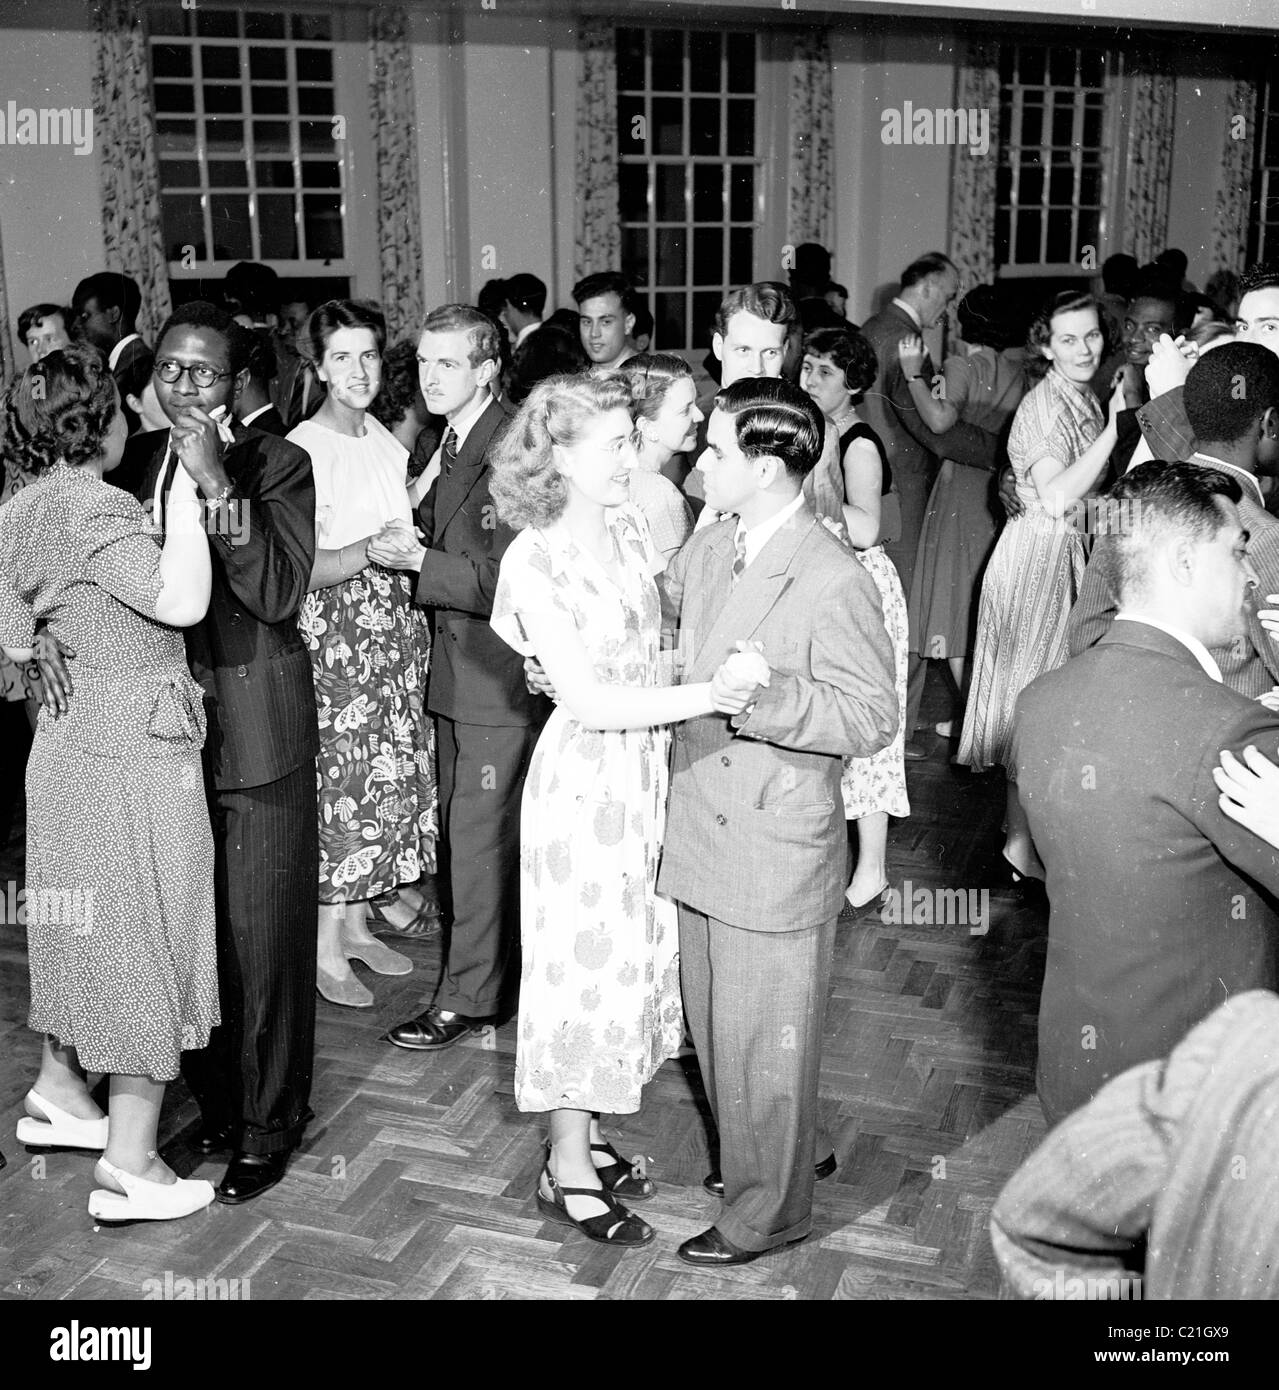 1950, storico, un uomo straniero e una donna inglese che ballano insieme in una festa di benvenuto per i nuovi immigrati in Gran Bretagna tenutasi al Consiglio britannico. Foto Stock